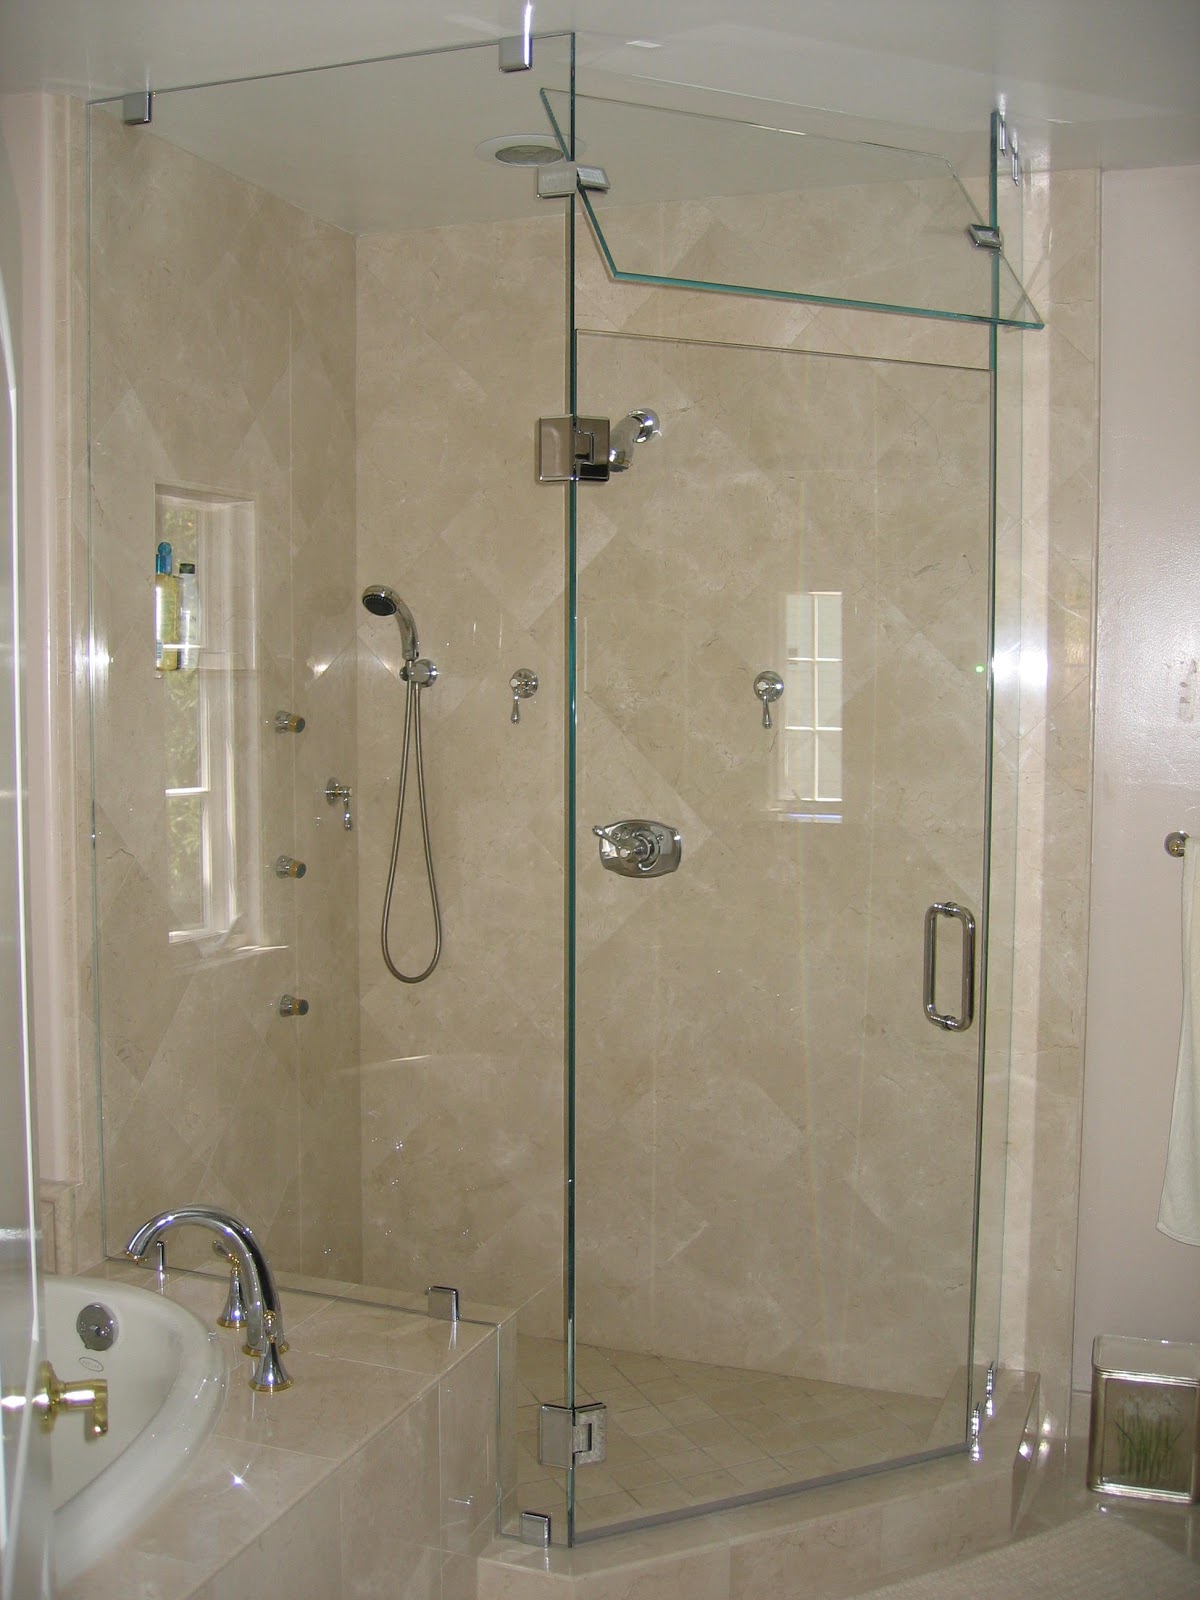 Phòng tắm kính mở quay là một trong những kiểu thiết kế phòng tắm đang được ưa chuộng hiện nay. Nhấn chuột để xem ảnh và tìm hiểu thêm về loại phòng tắm này.